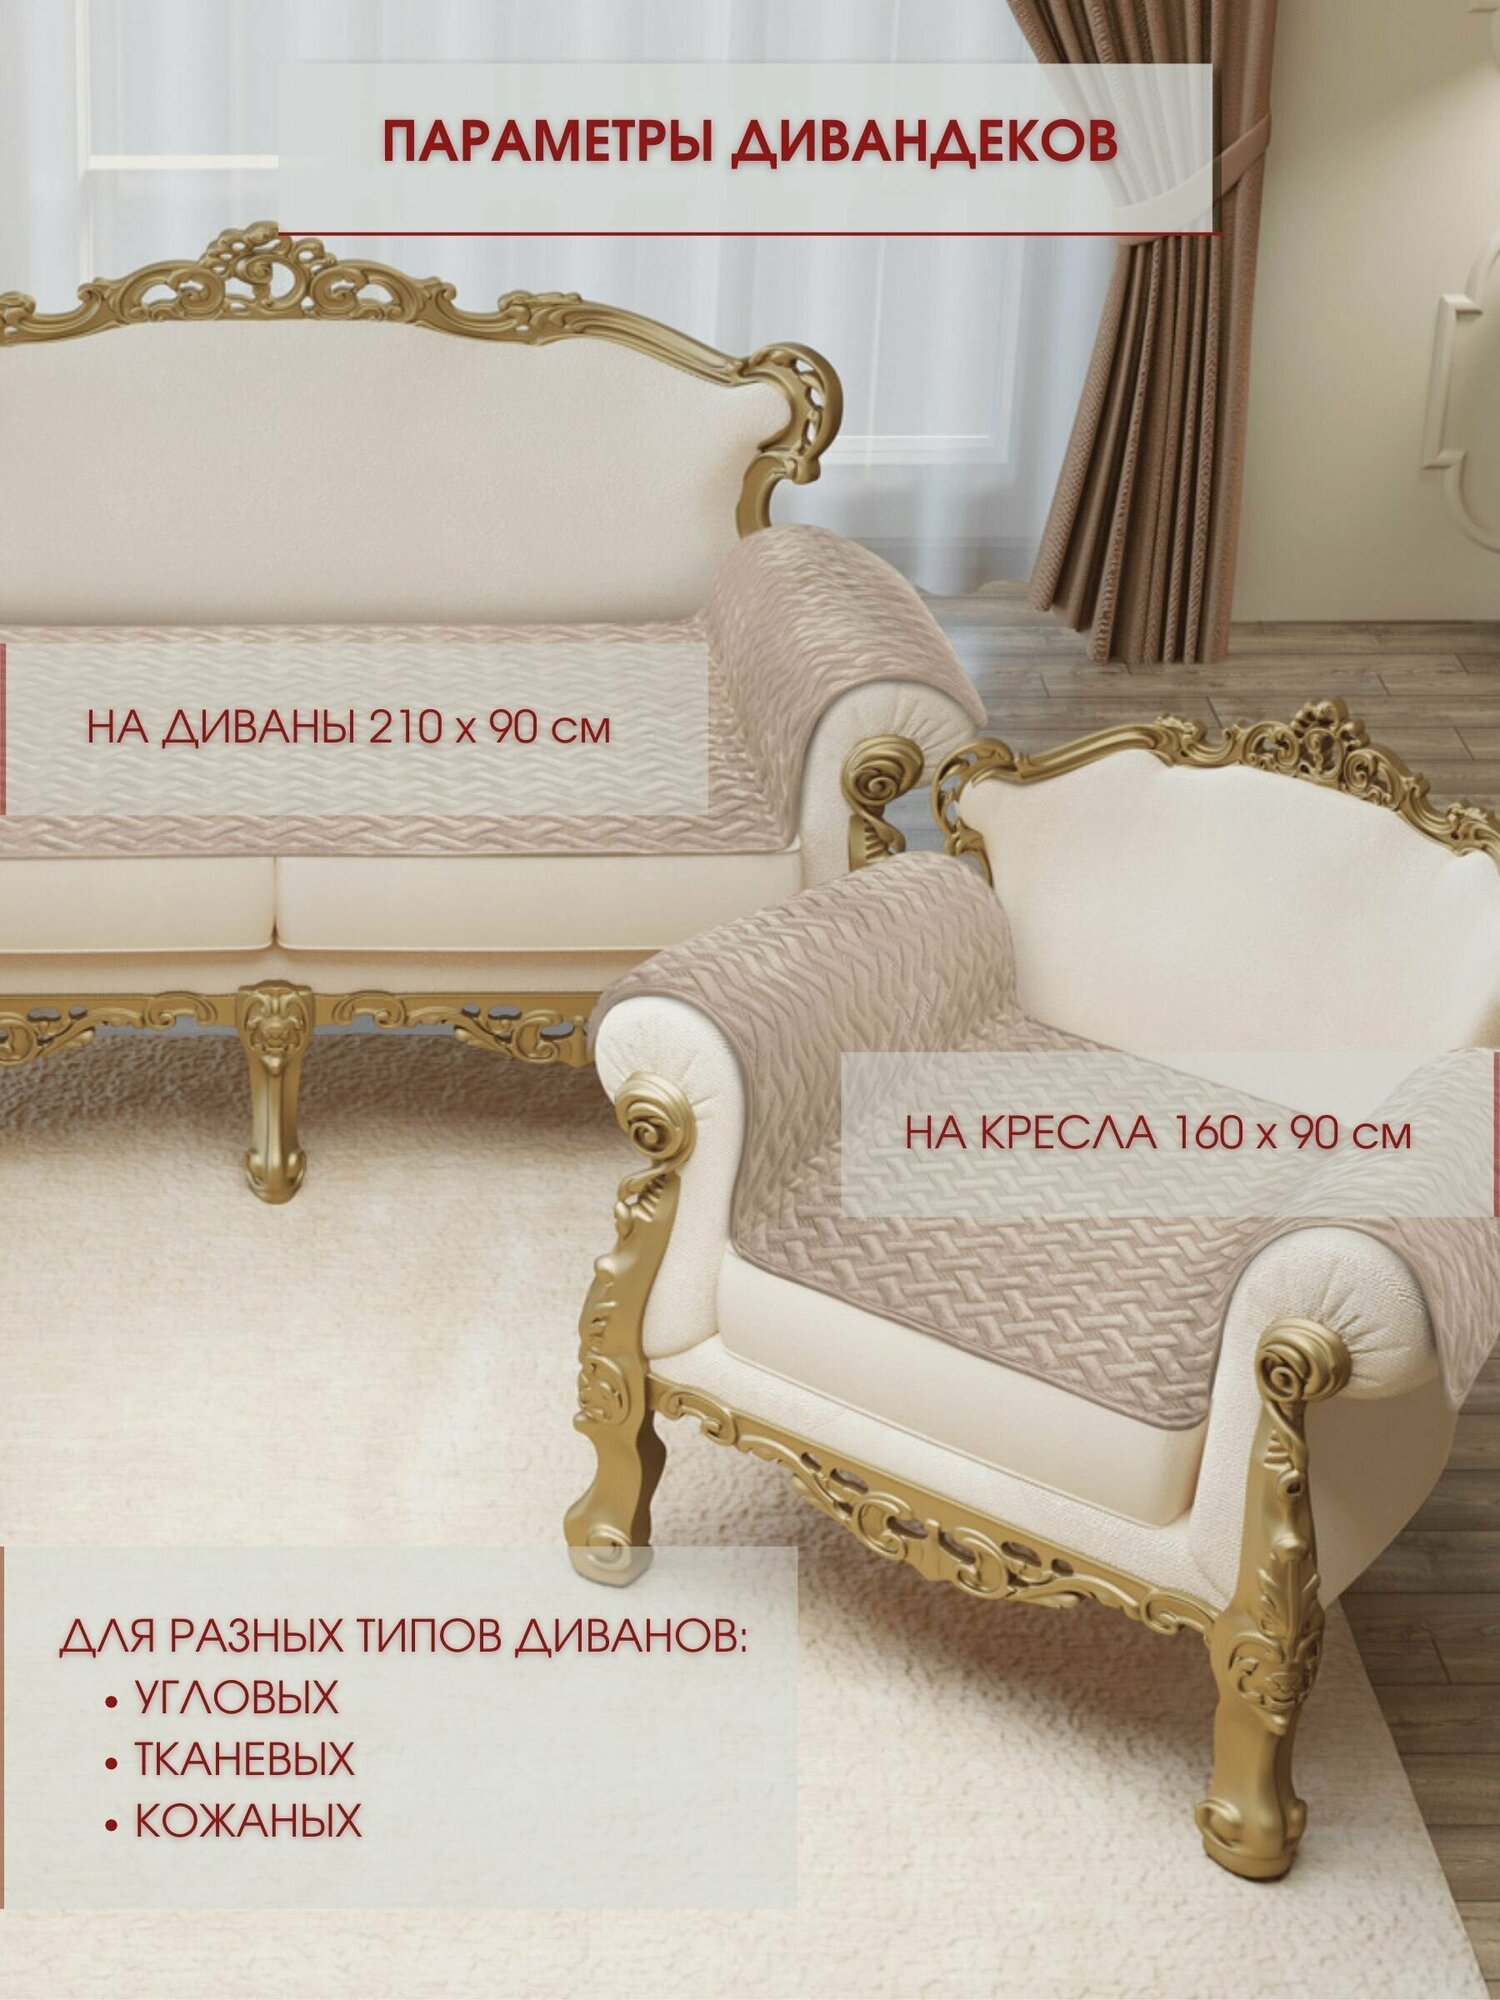 Набор накидок на диван и кресла 1+2 / Набор чехлов на мебель / дивандек антискользящий Marianna GRETA LUX 05